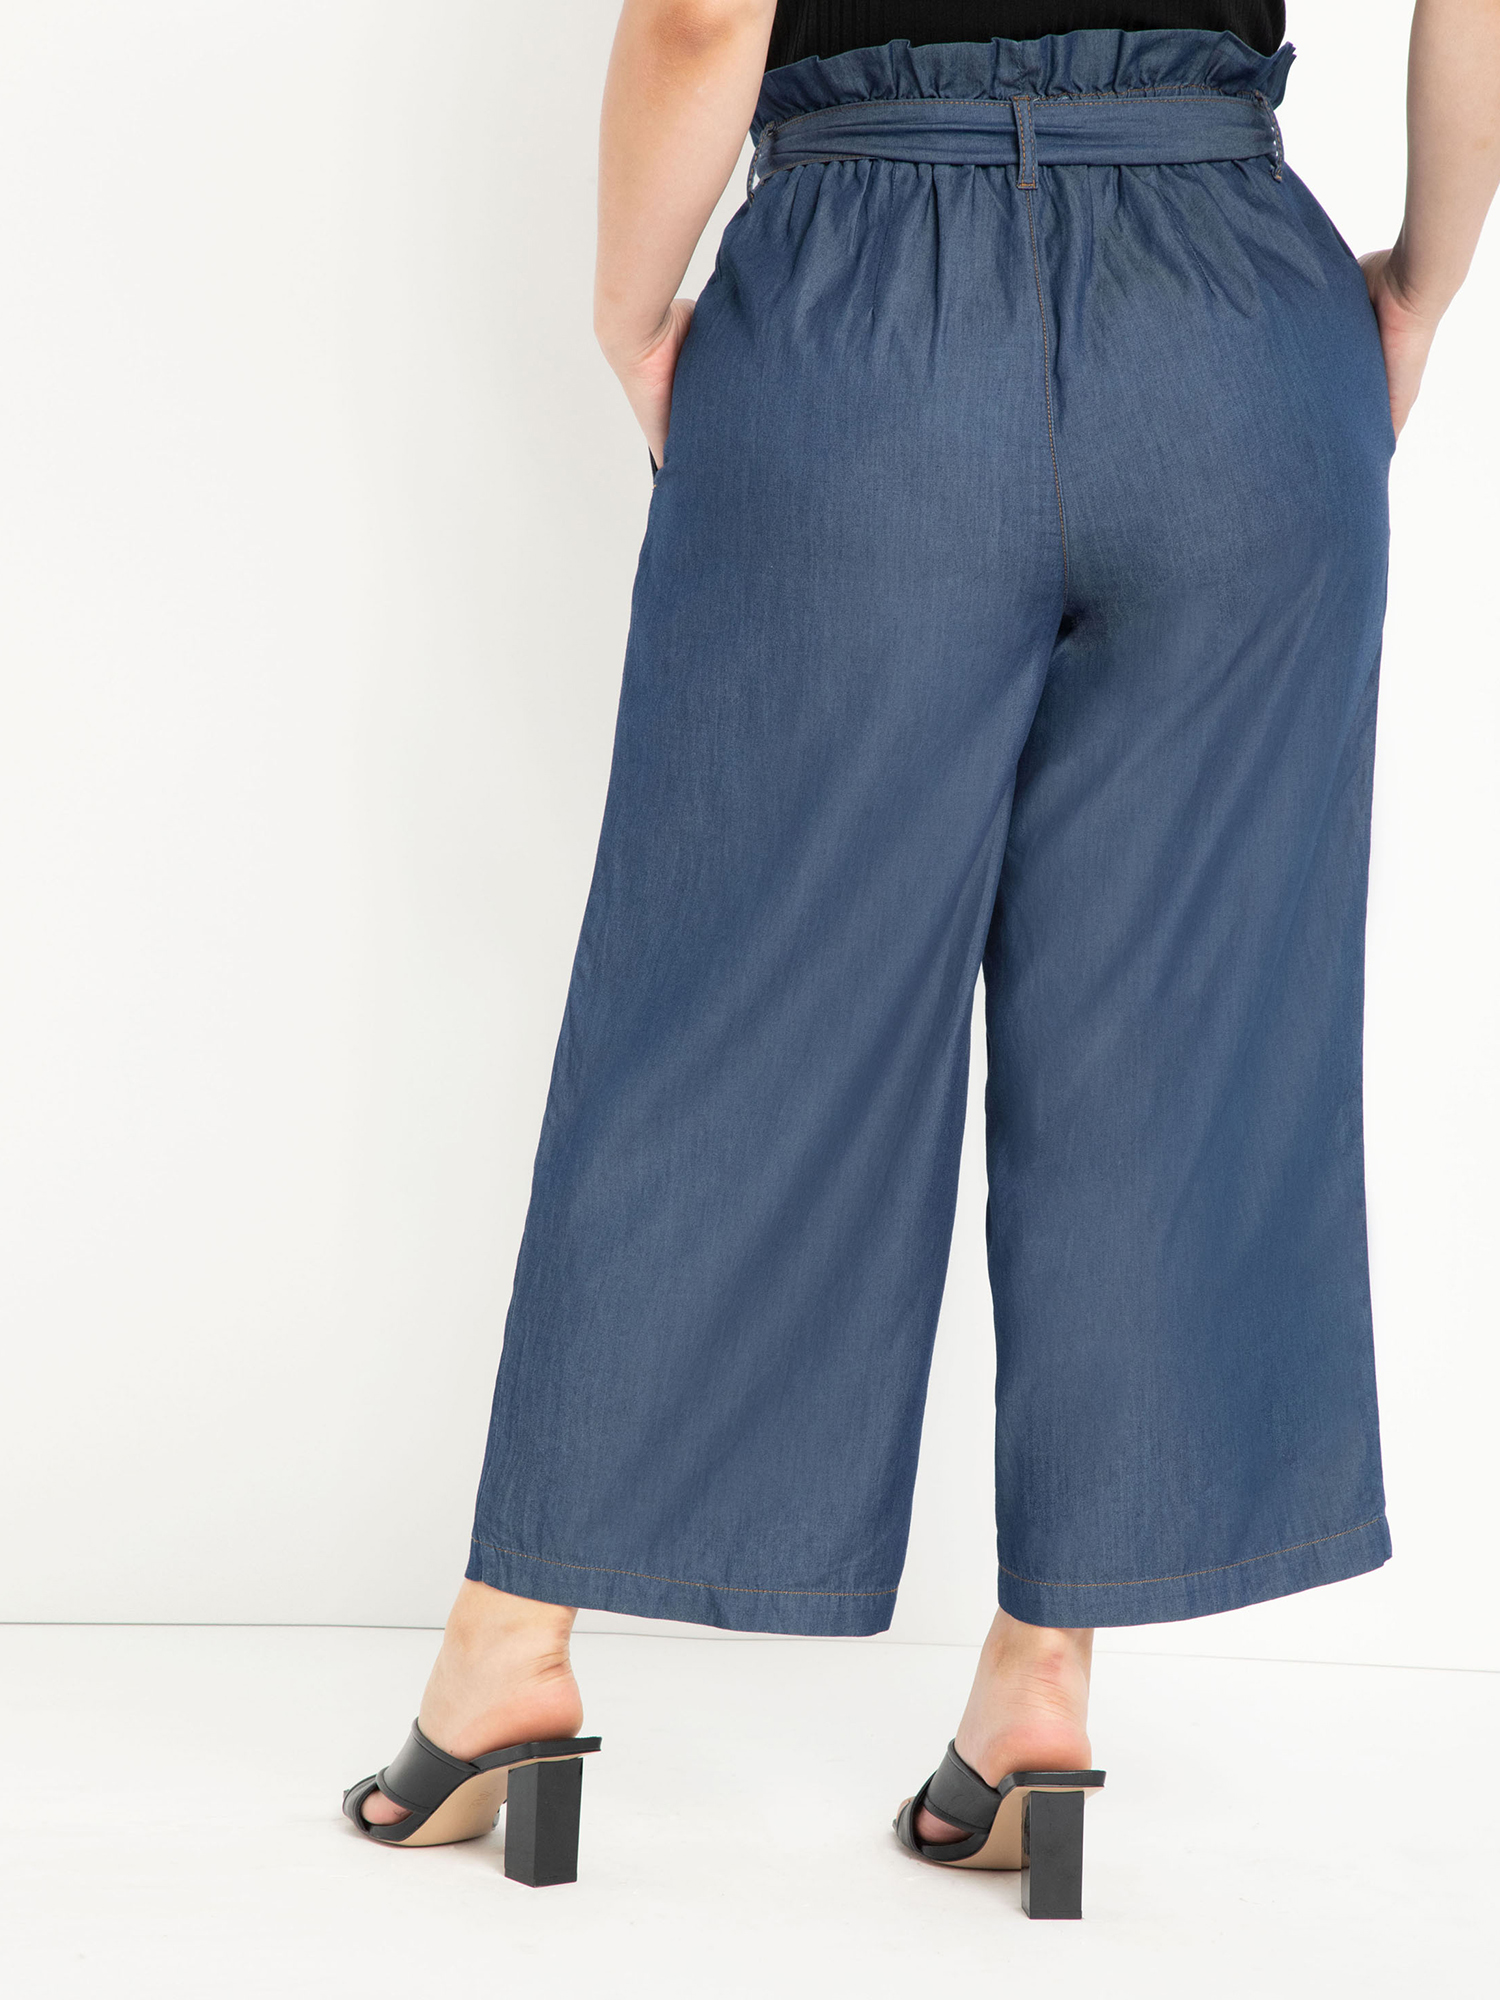 ELOQUII Elements Plus Size Paper Bag Waist Wide Leg Crop Pants - image 2 of 3